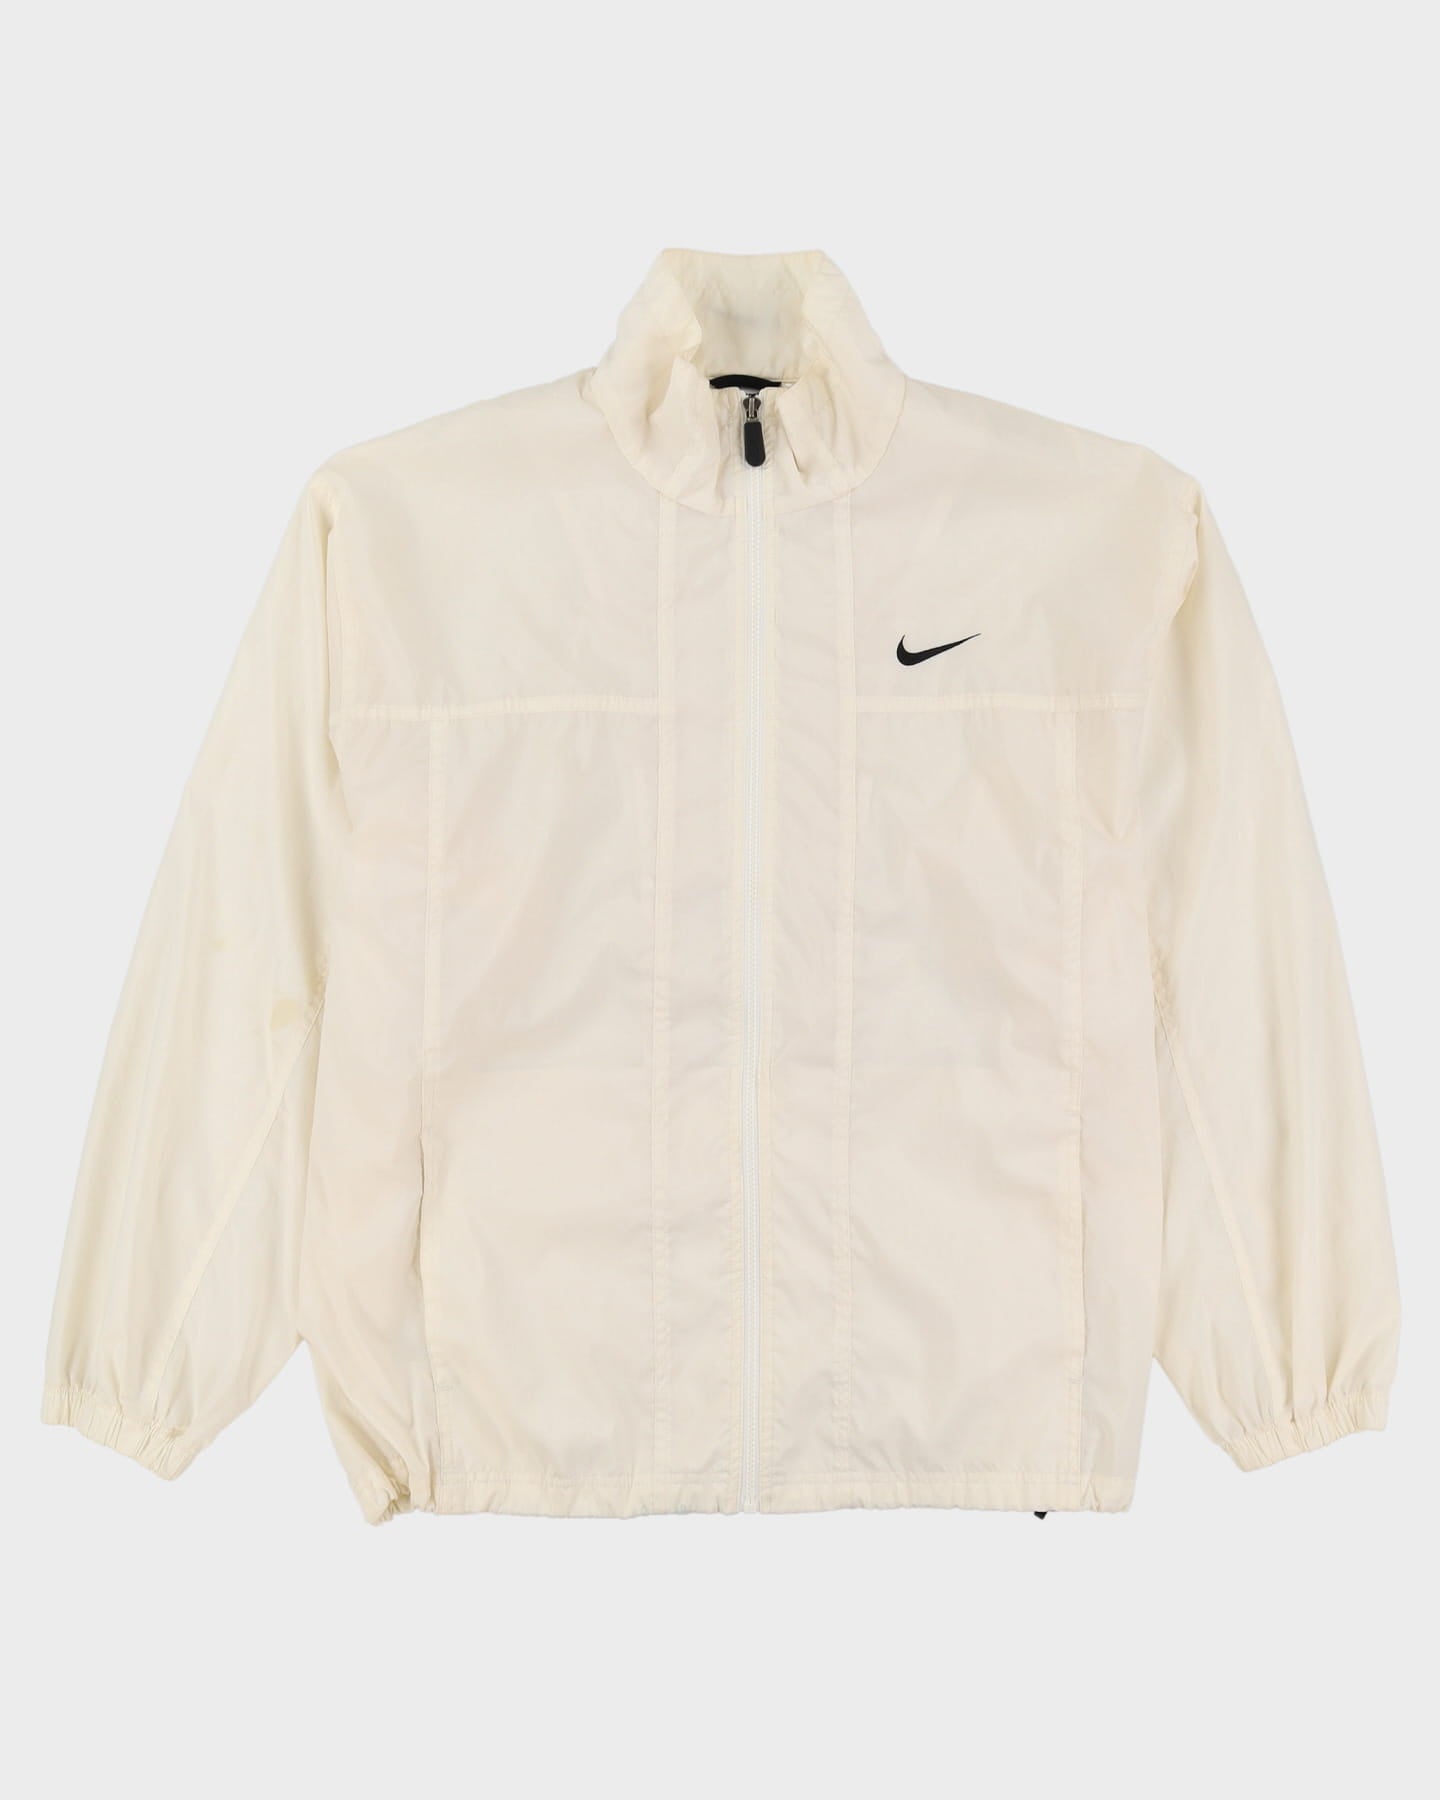 90s Nike White Full Zip Windbreaker Jacket - XL